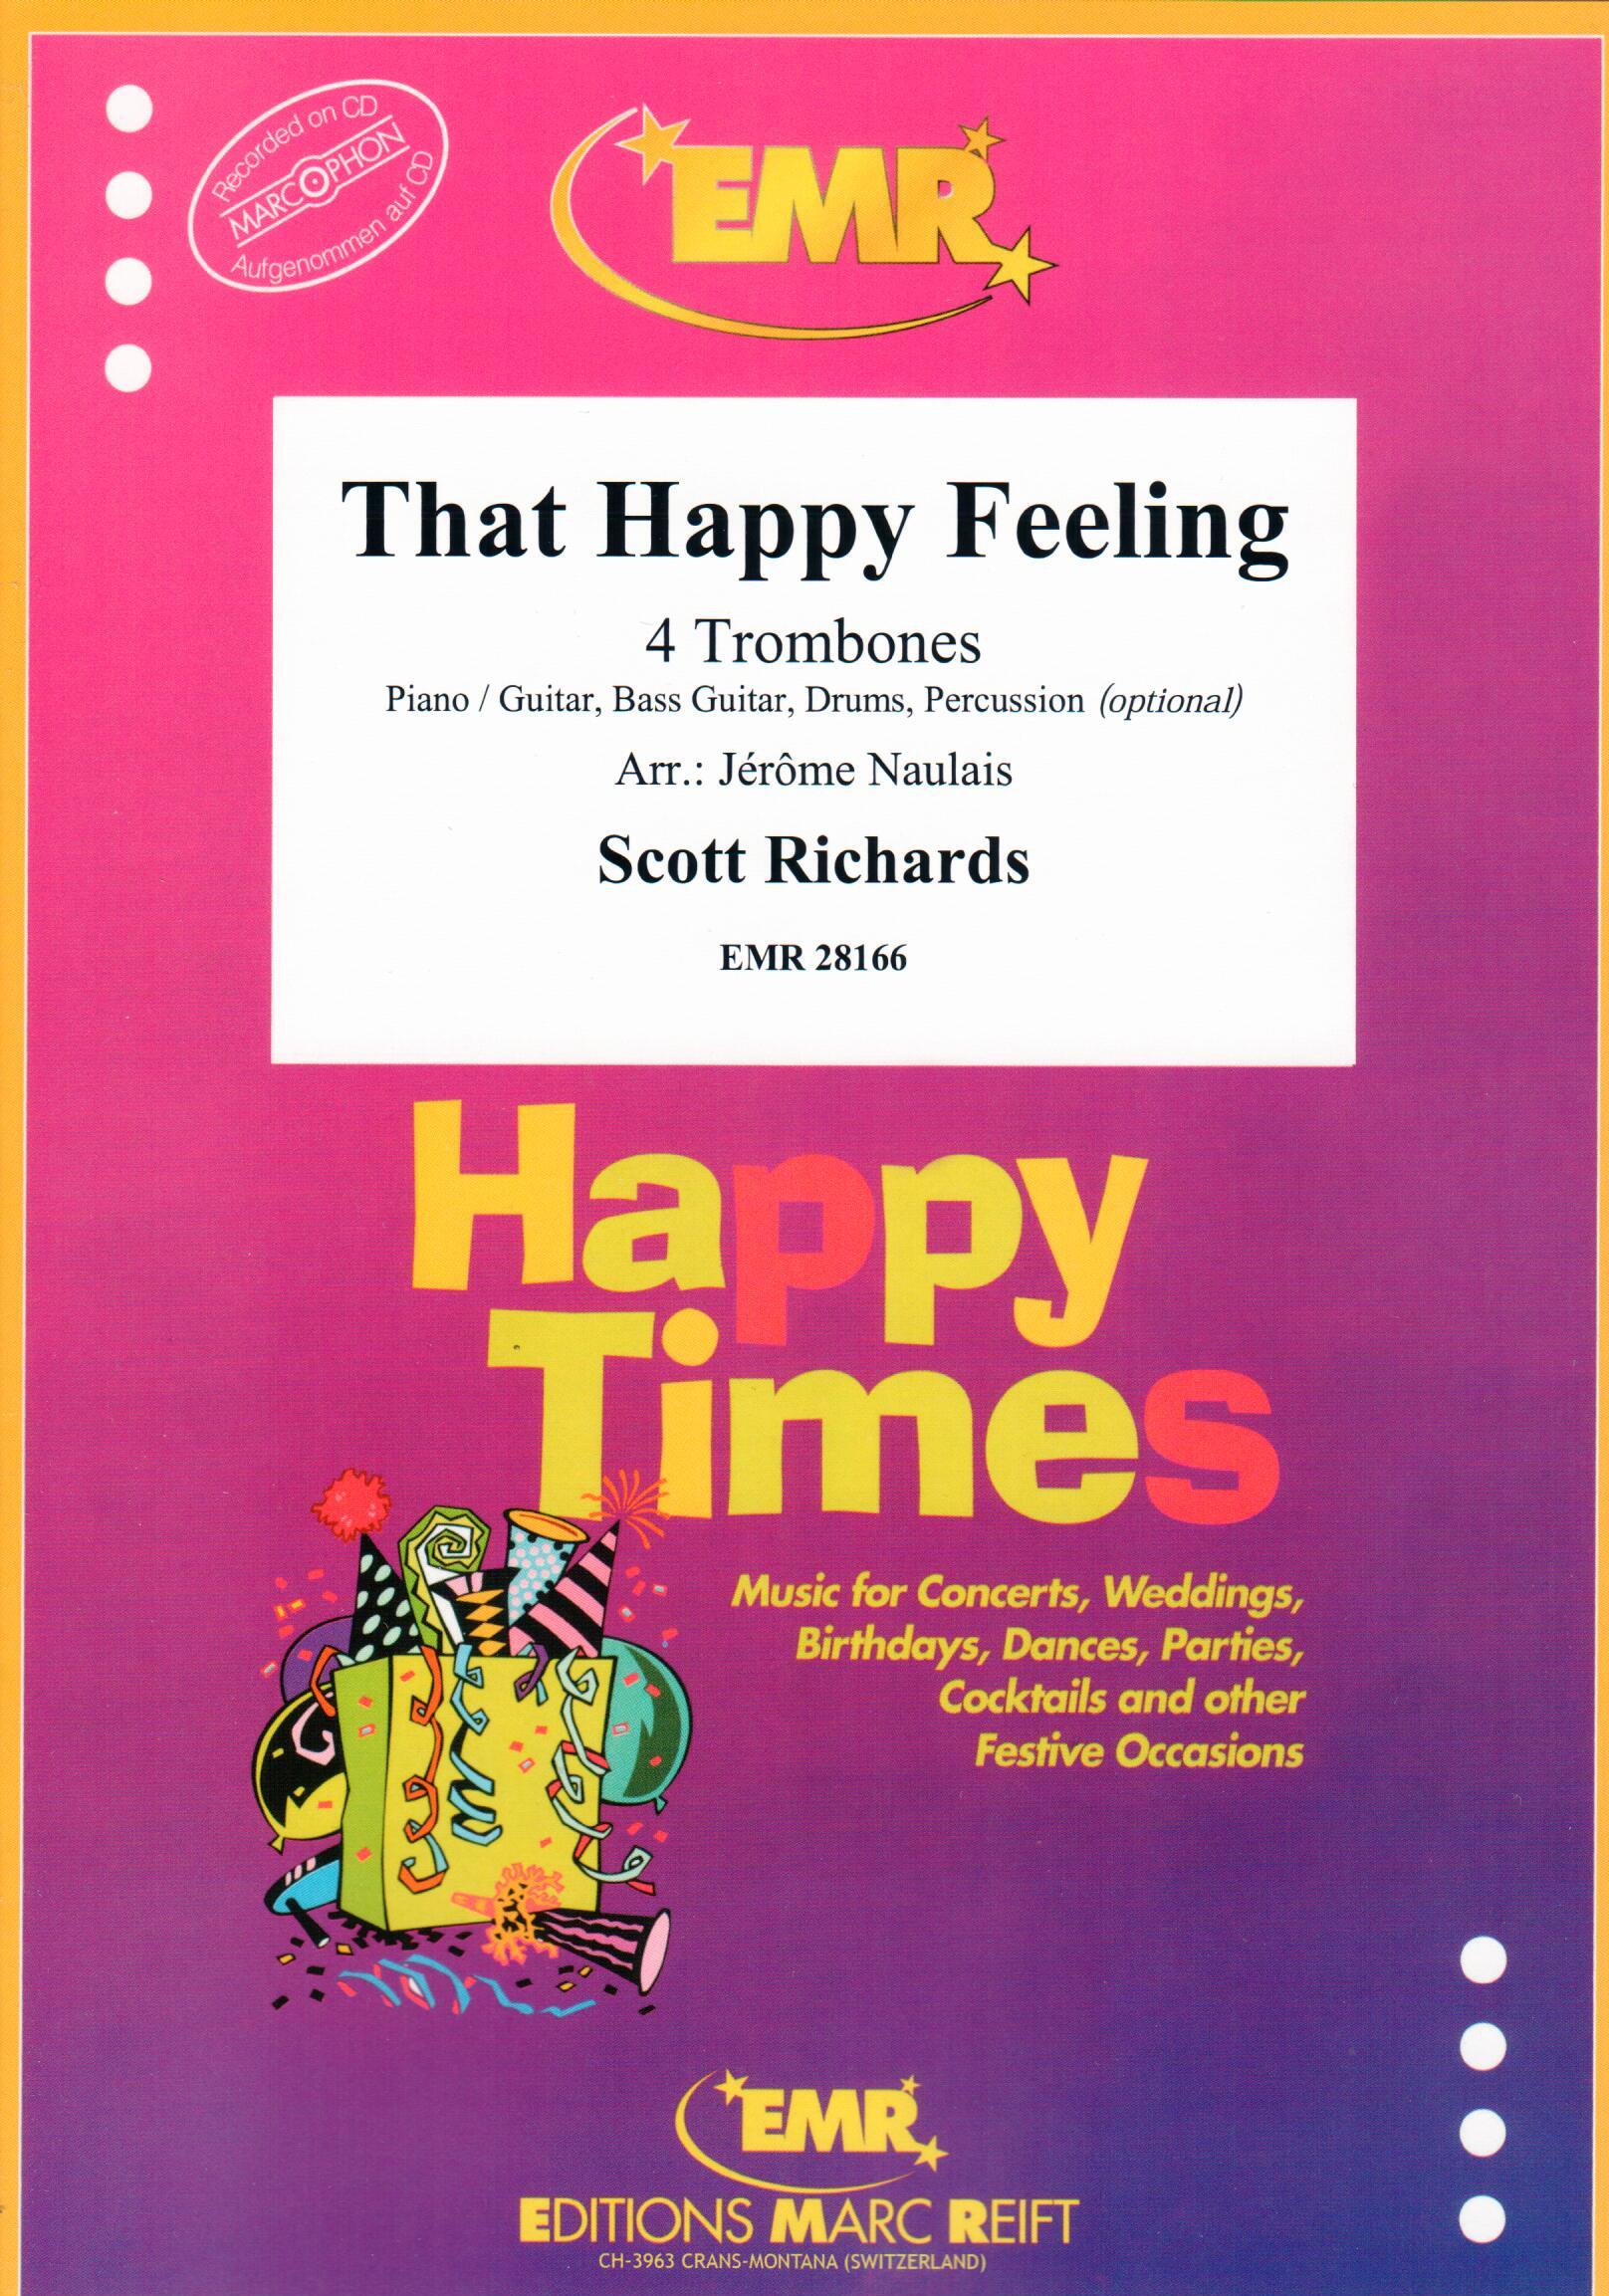 THAT HAPPY FEELING, SOLOS - Trombone